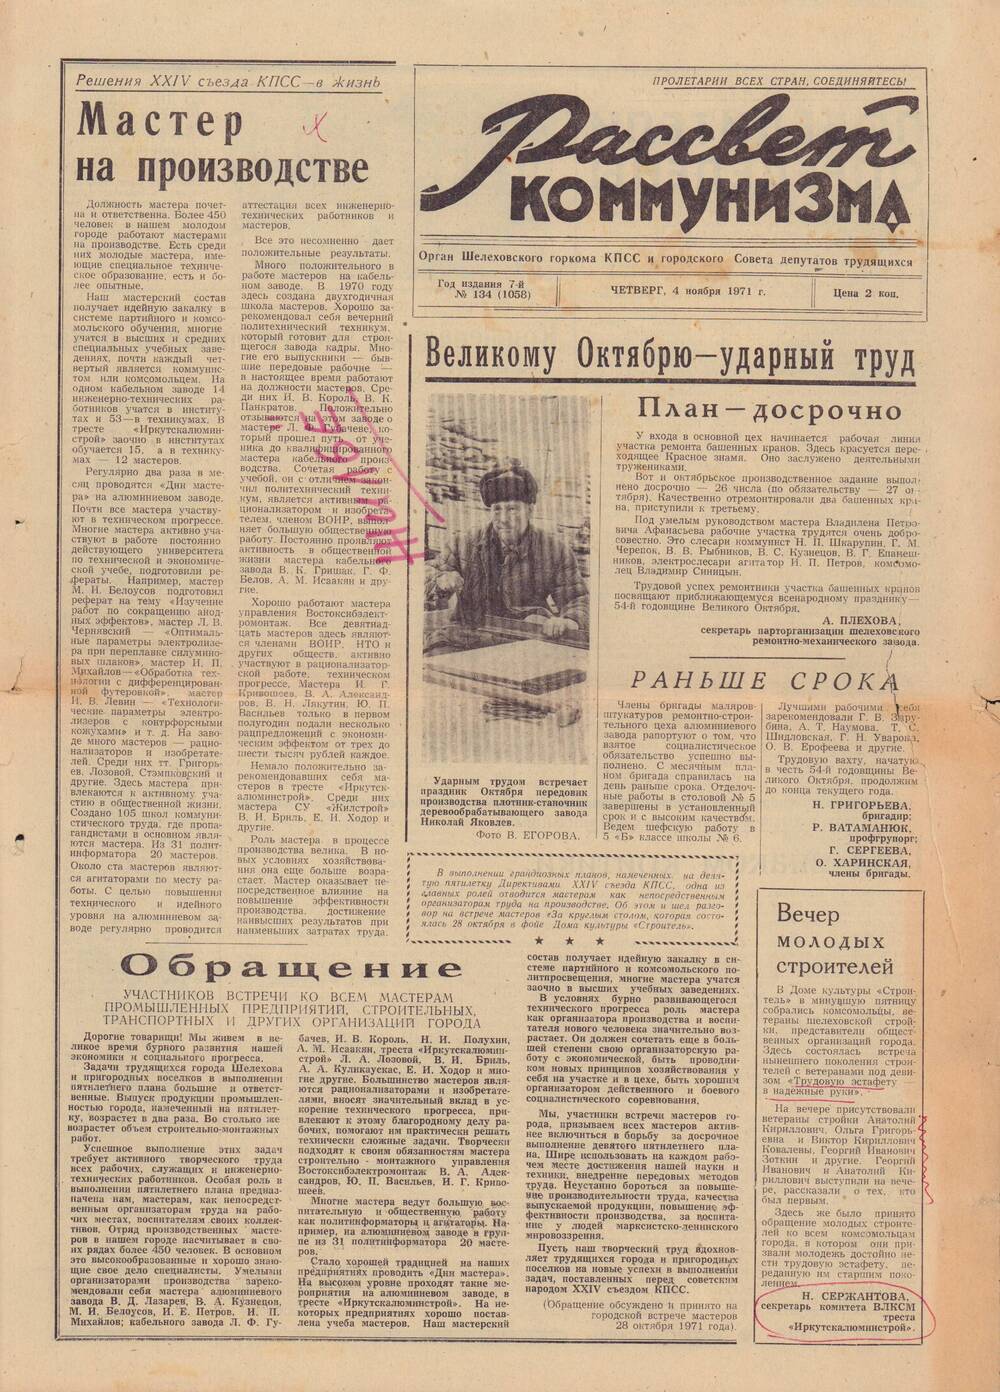 Газета «Рассвет коммунизма» № 134 от 4 ноября 1971 г